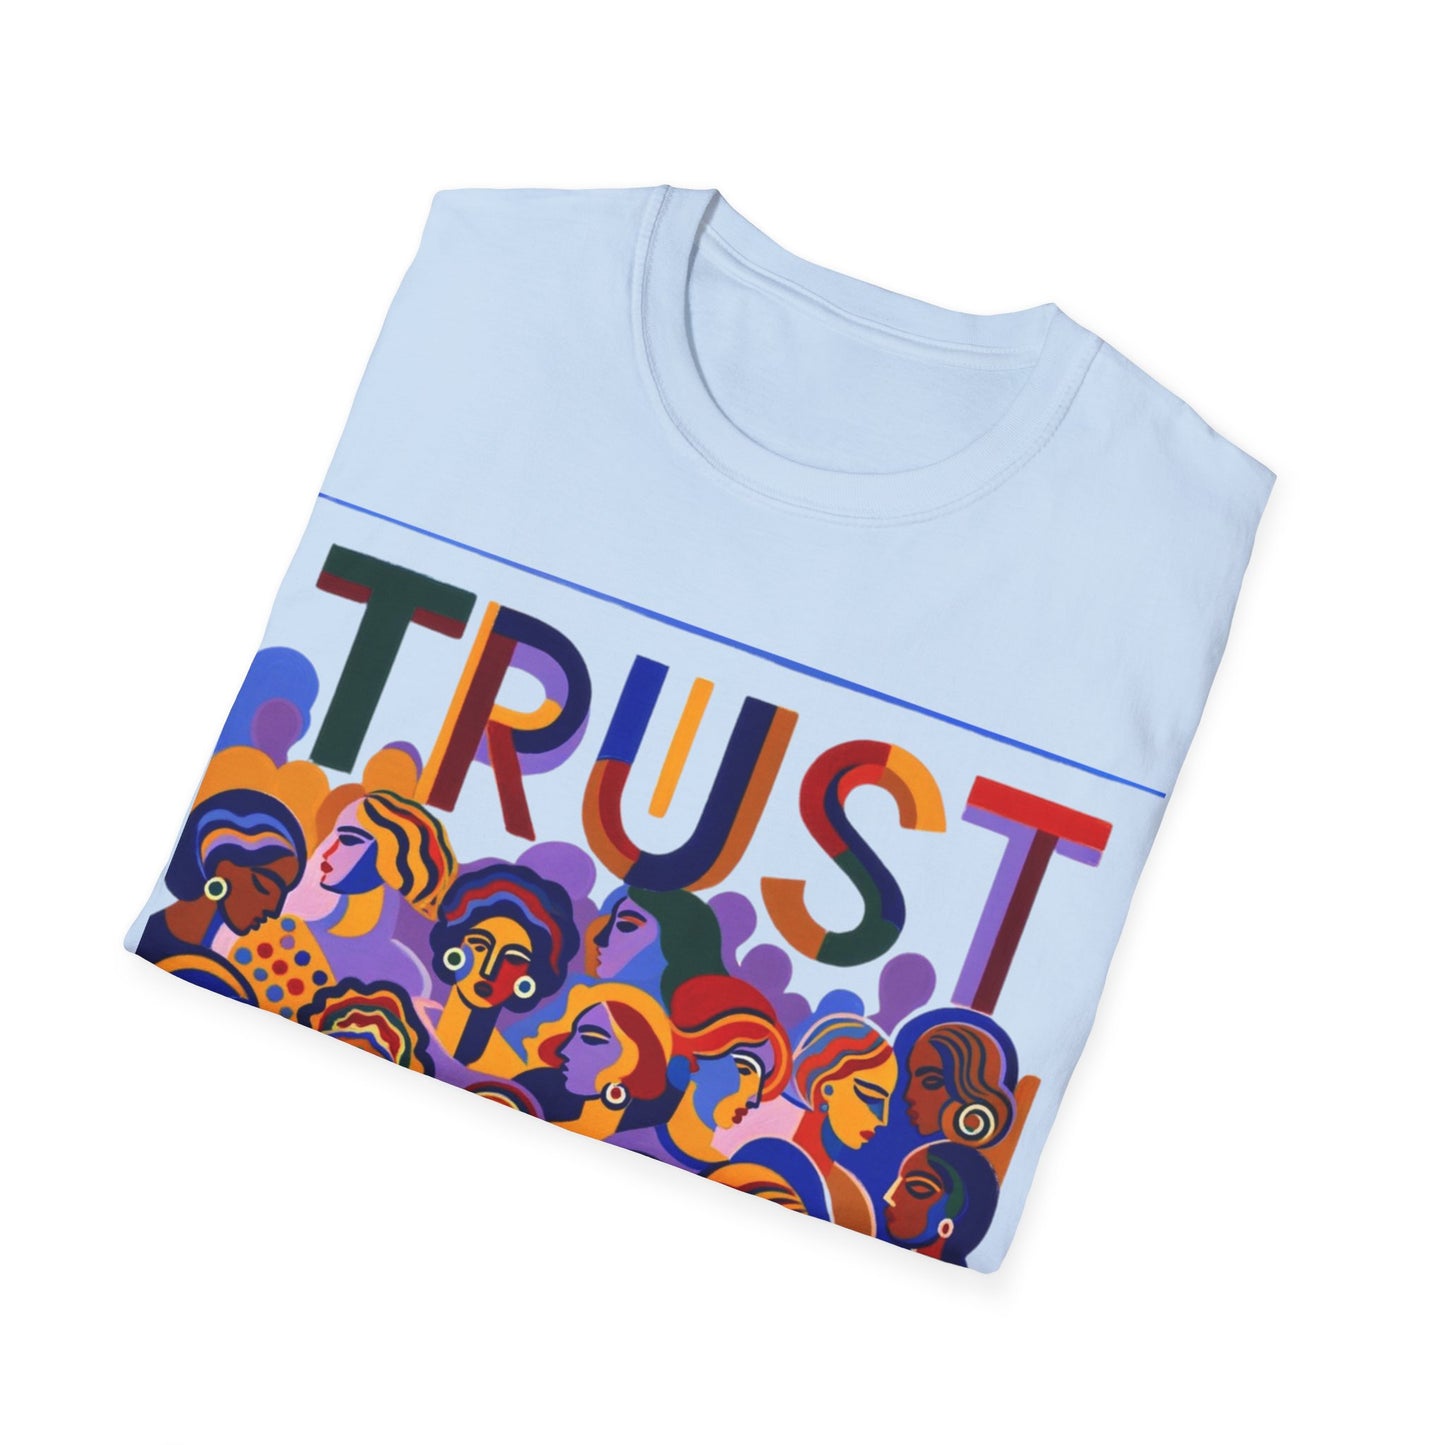 Bold Statement Softstyle T-Shirt! Trust Women!